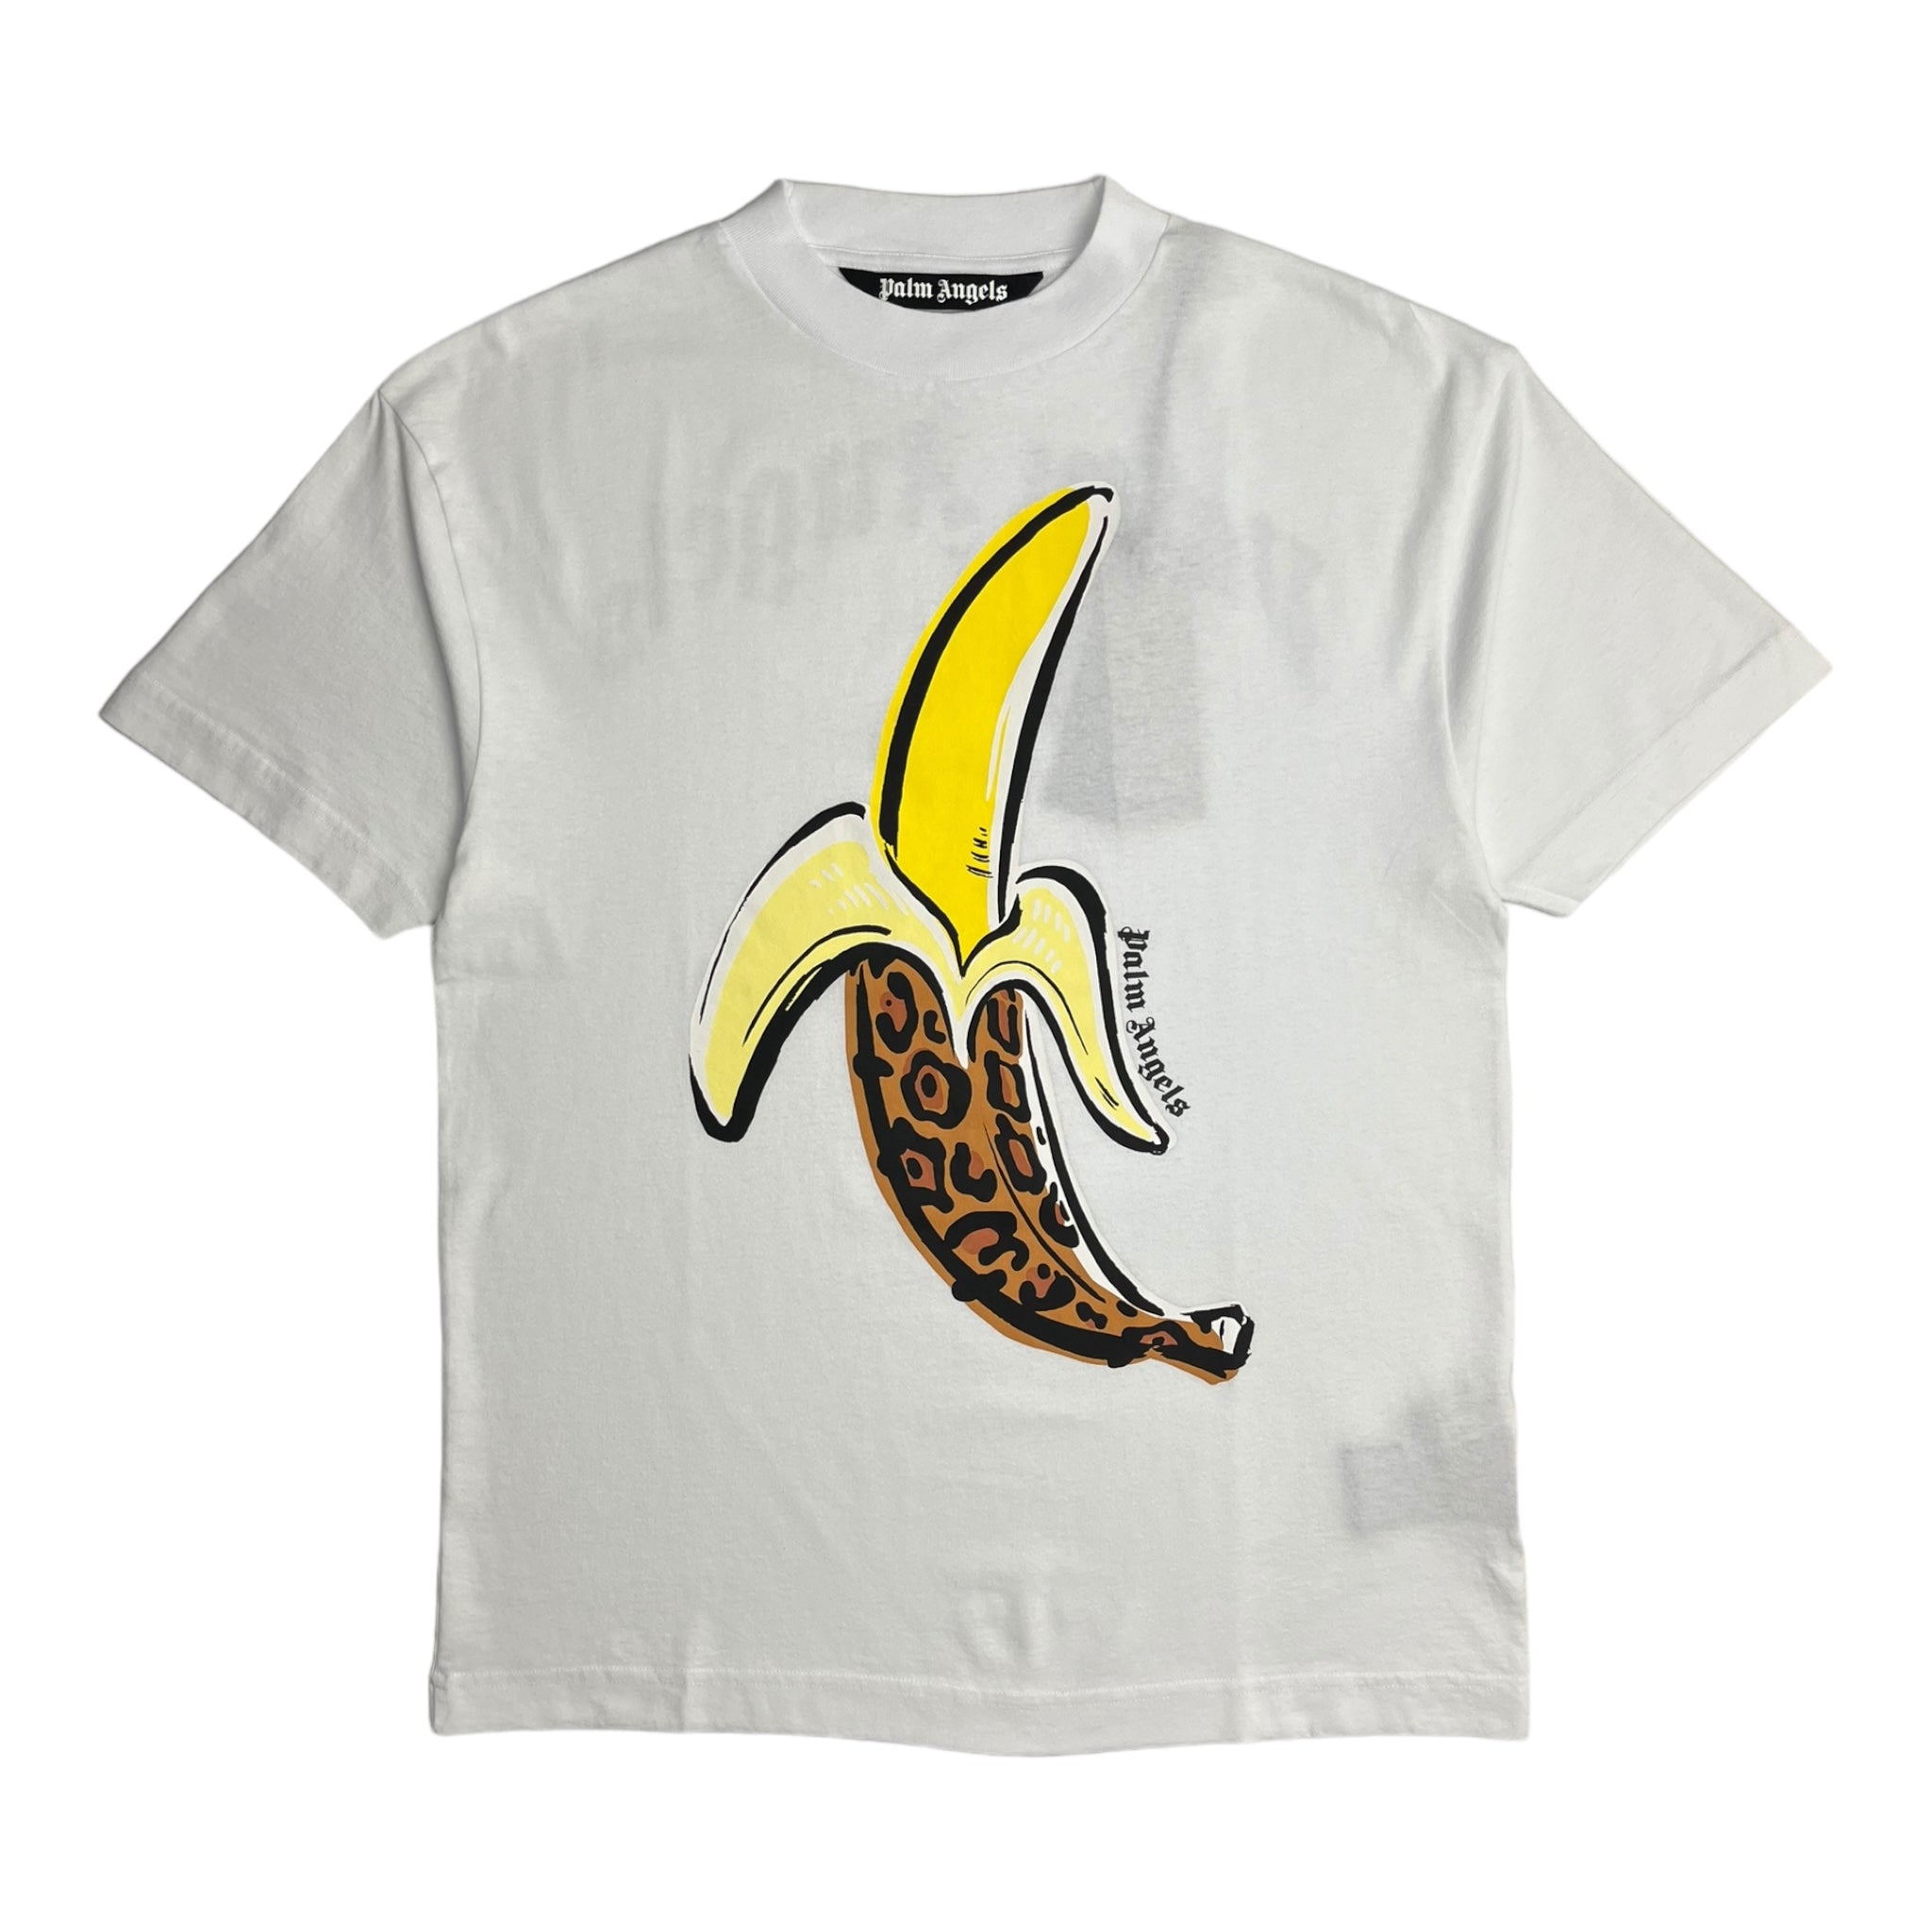 Palm Angels Banana T-Shirt - White/Yellow